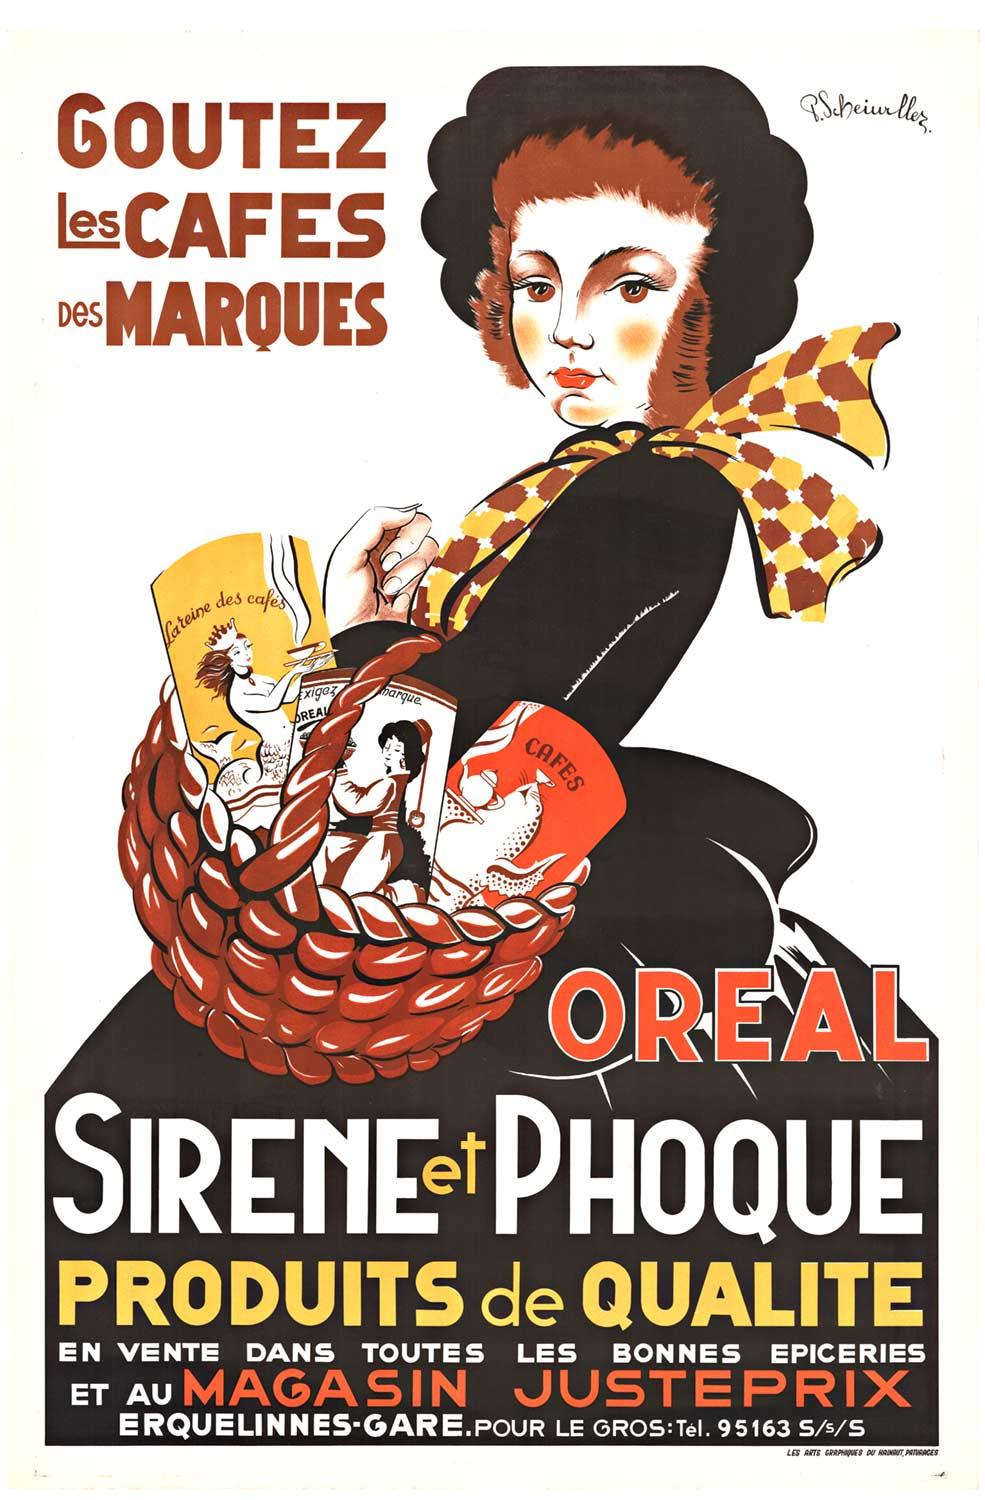 Affiche originale de café « Oreal Sirene et Phoque » des années 1940